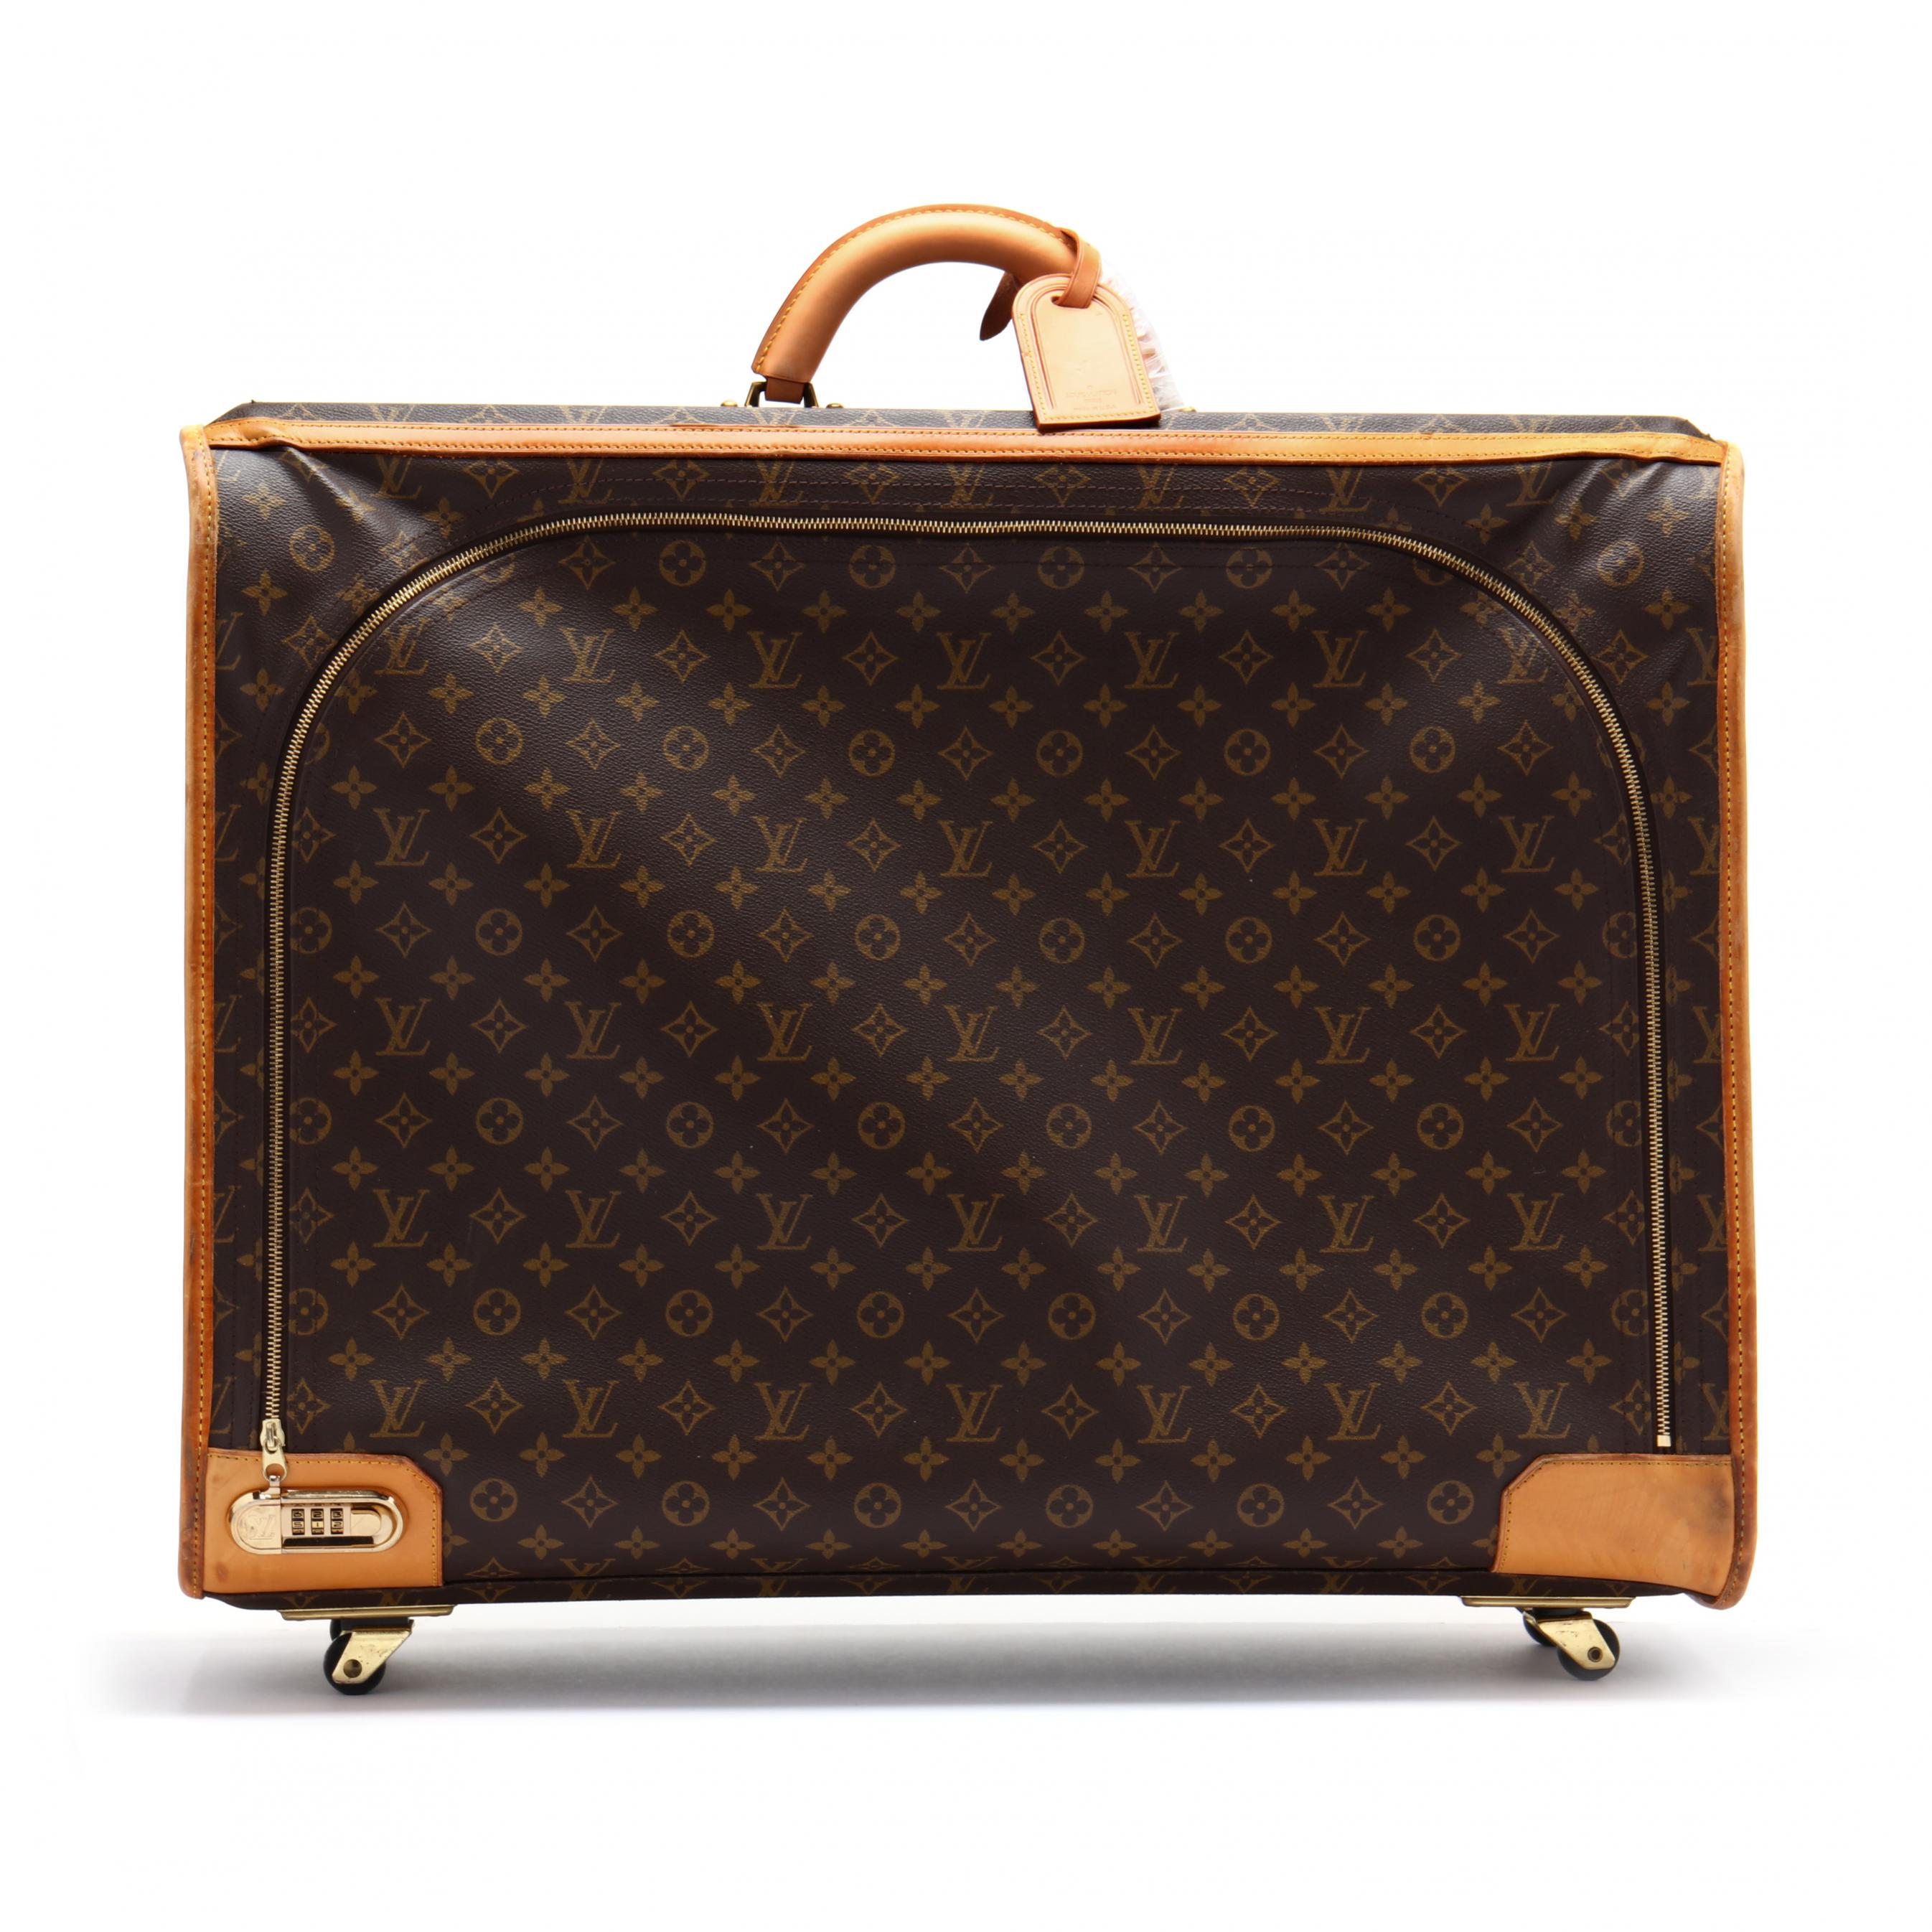 Sold at Auction: Pr. Louis Vuitton Monogram Large Vintage Suitcases